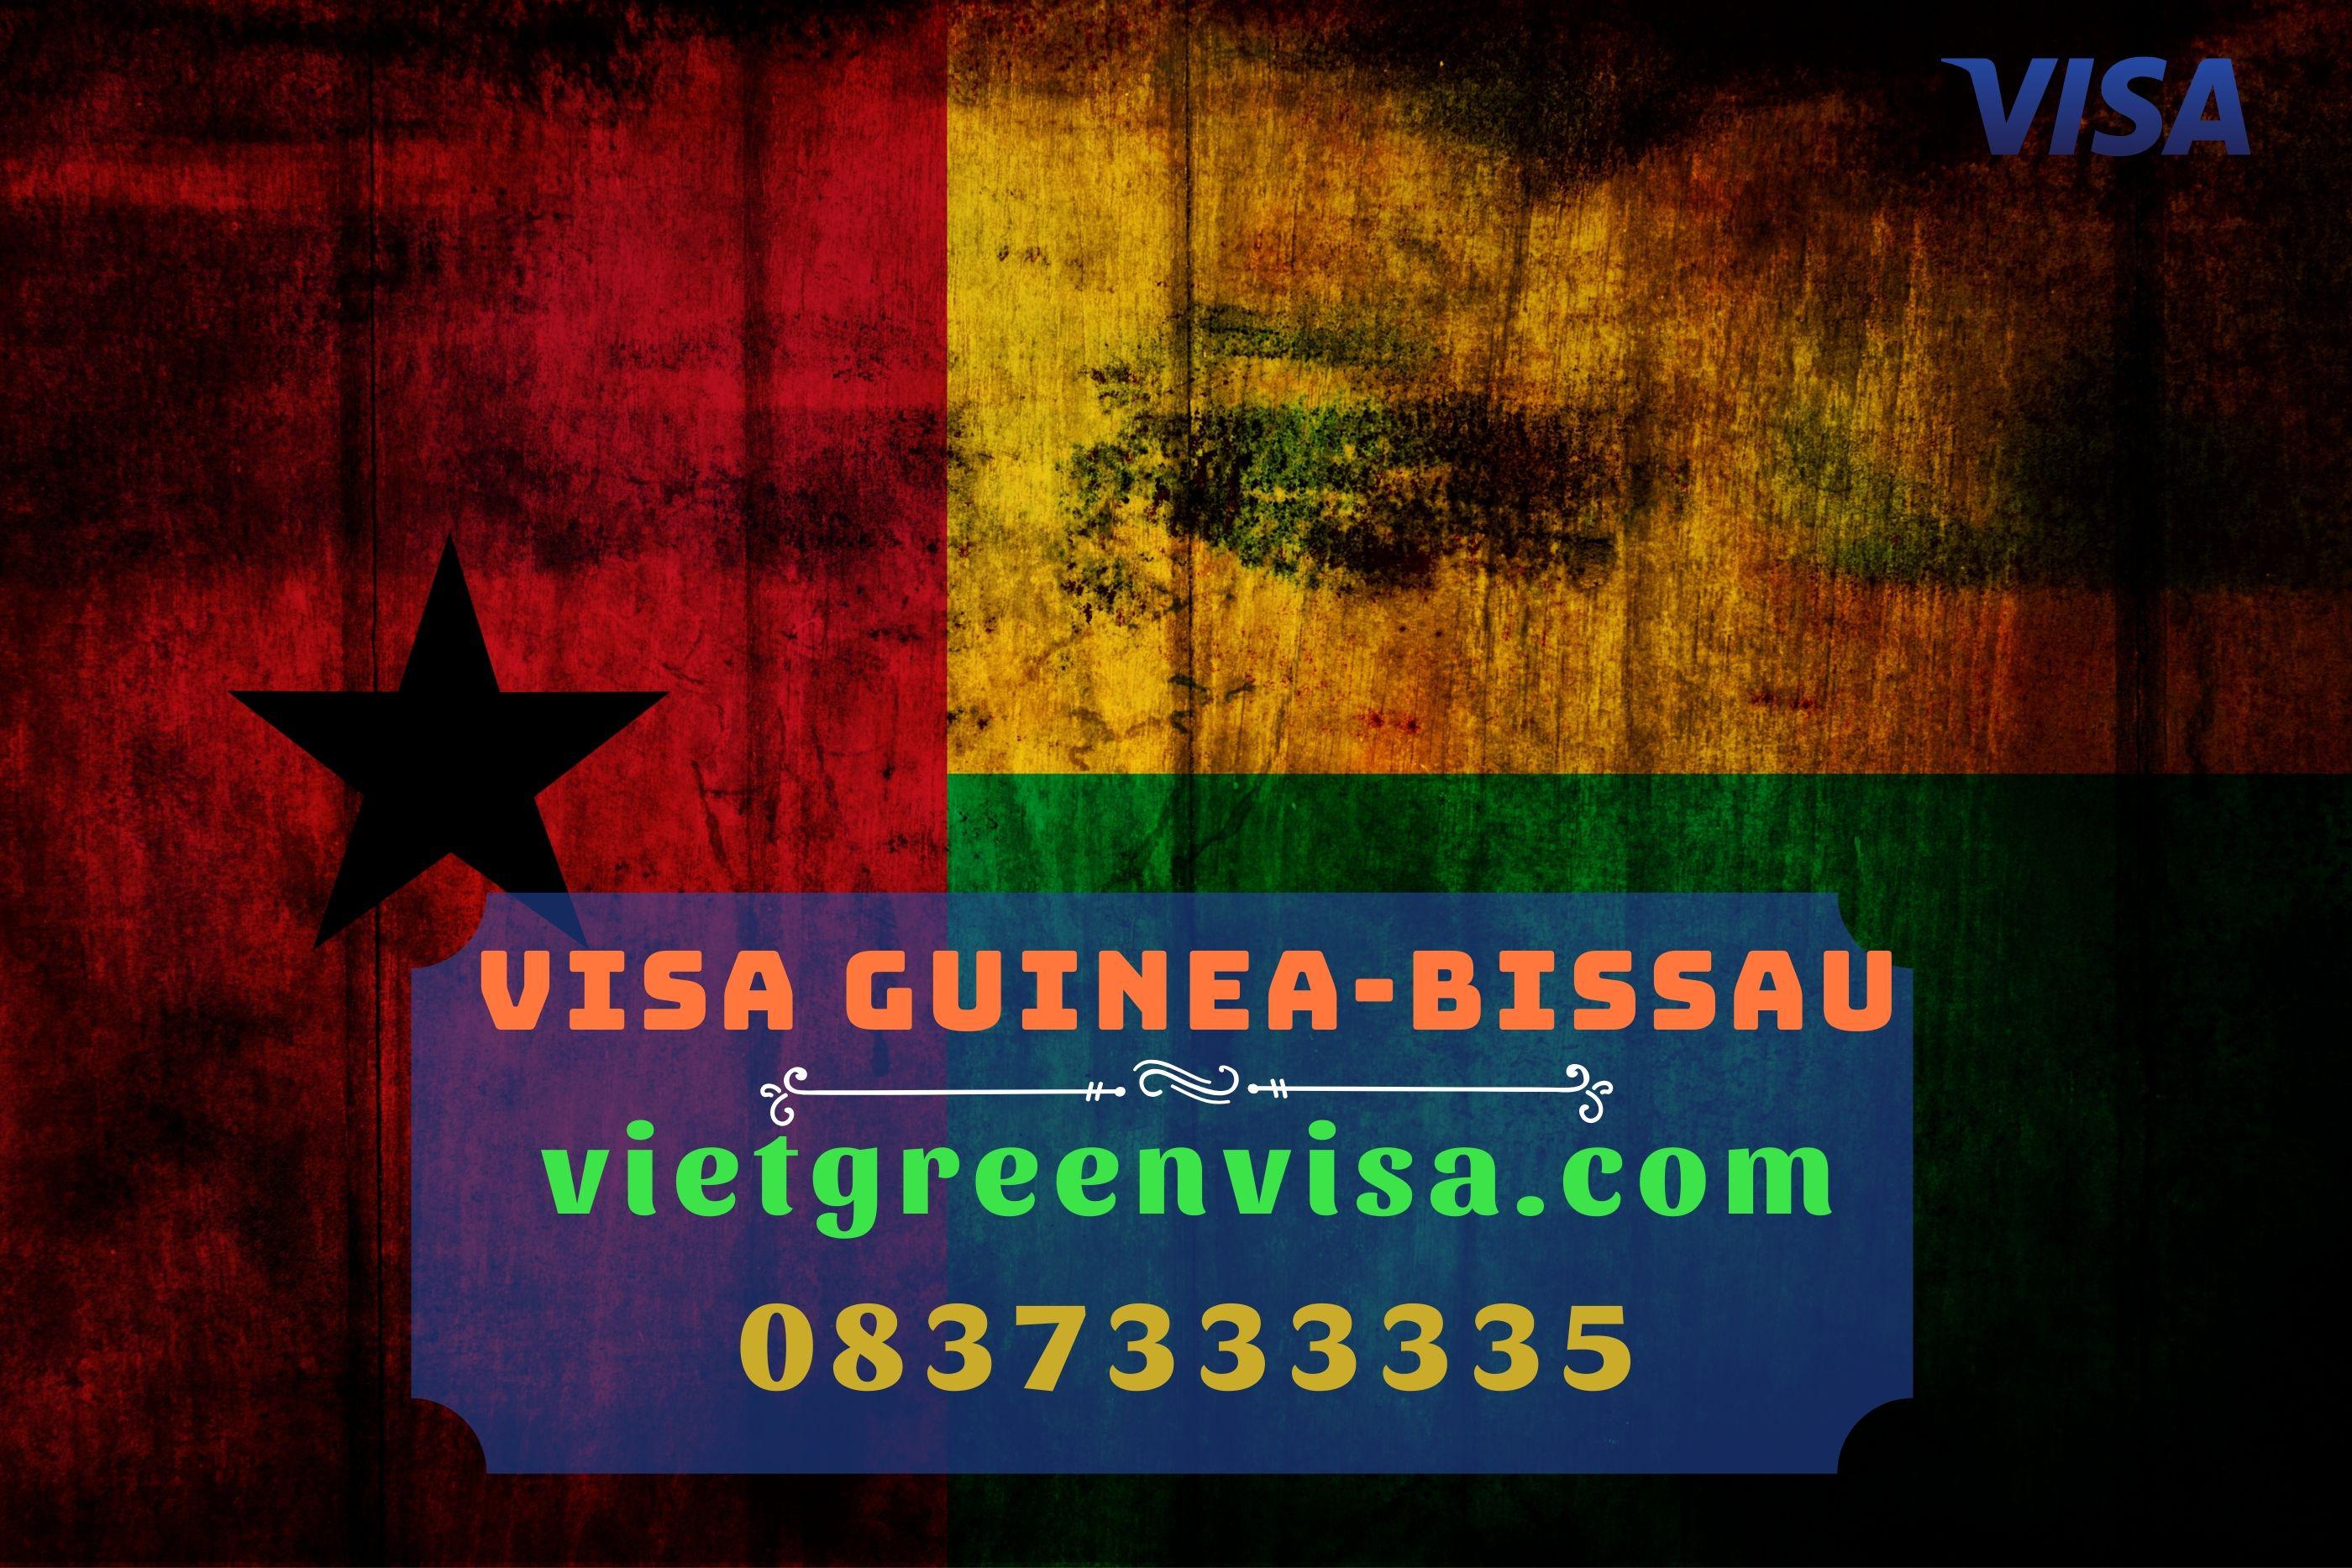 Hướng dẫn làm visa du lịch và công tác Guinea-Bissau dễ dàng